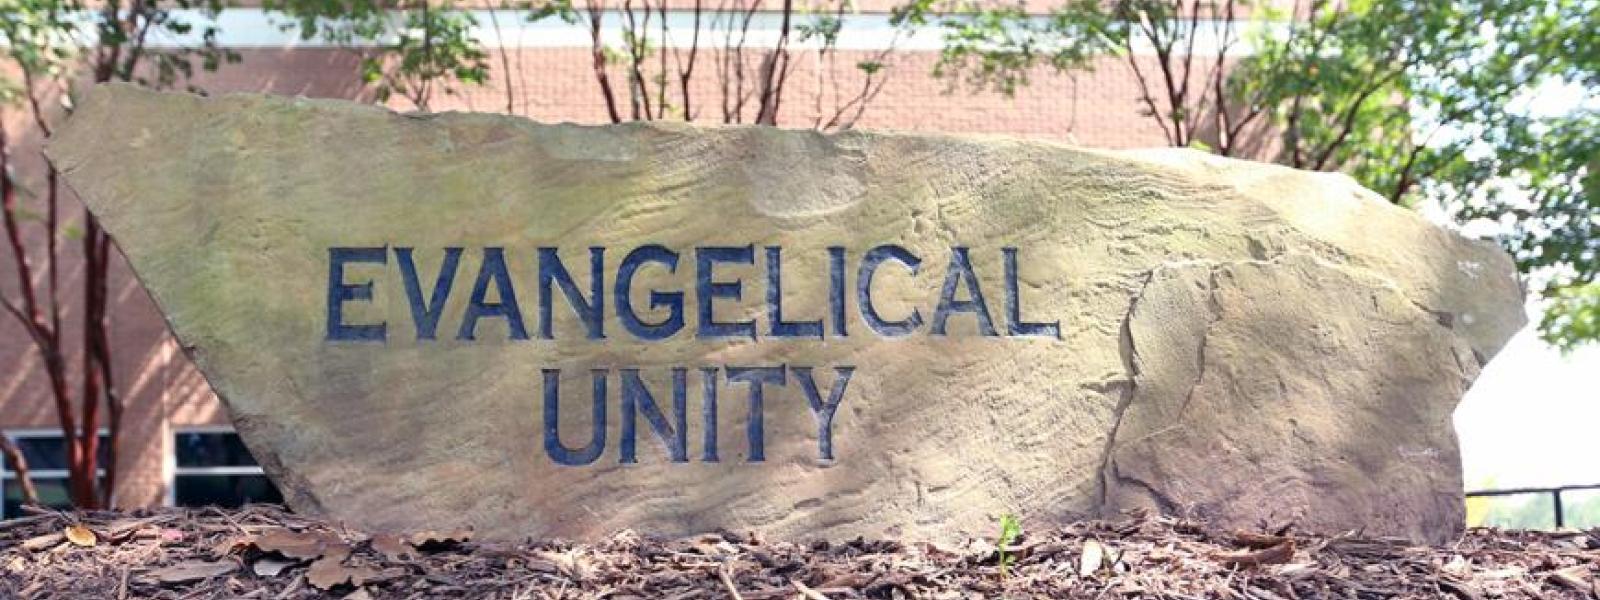 Evangelical Unity